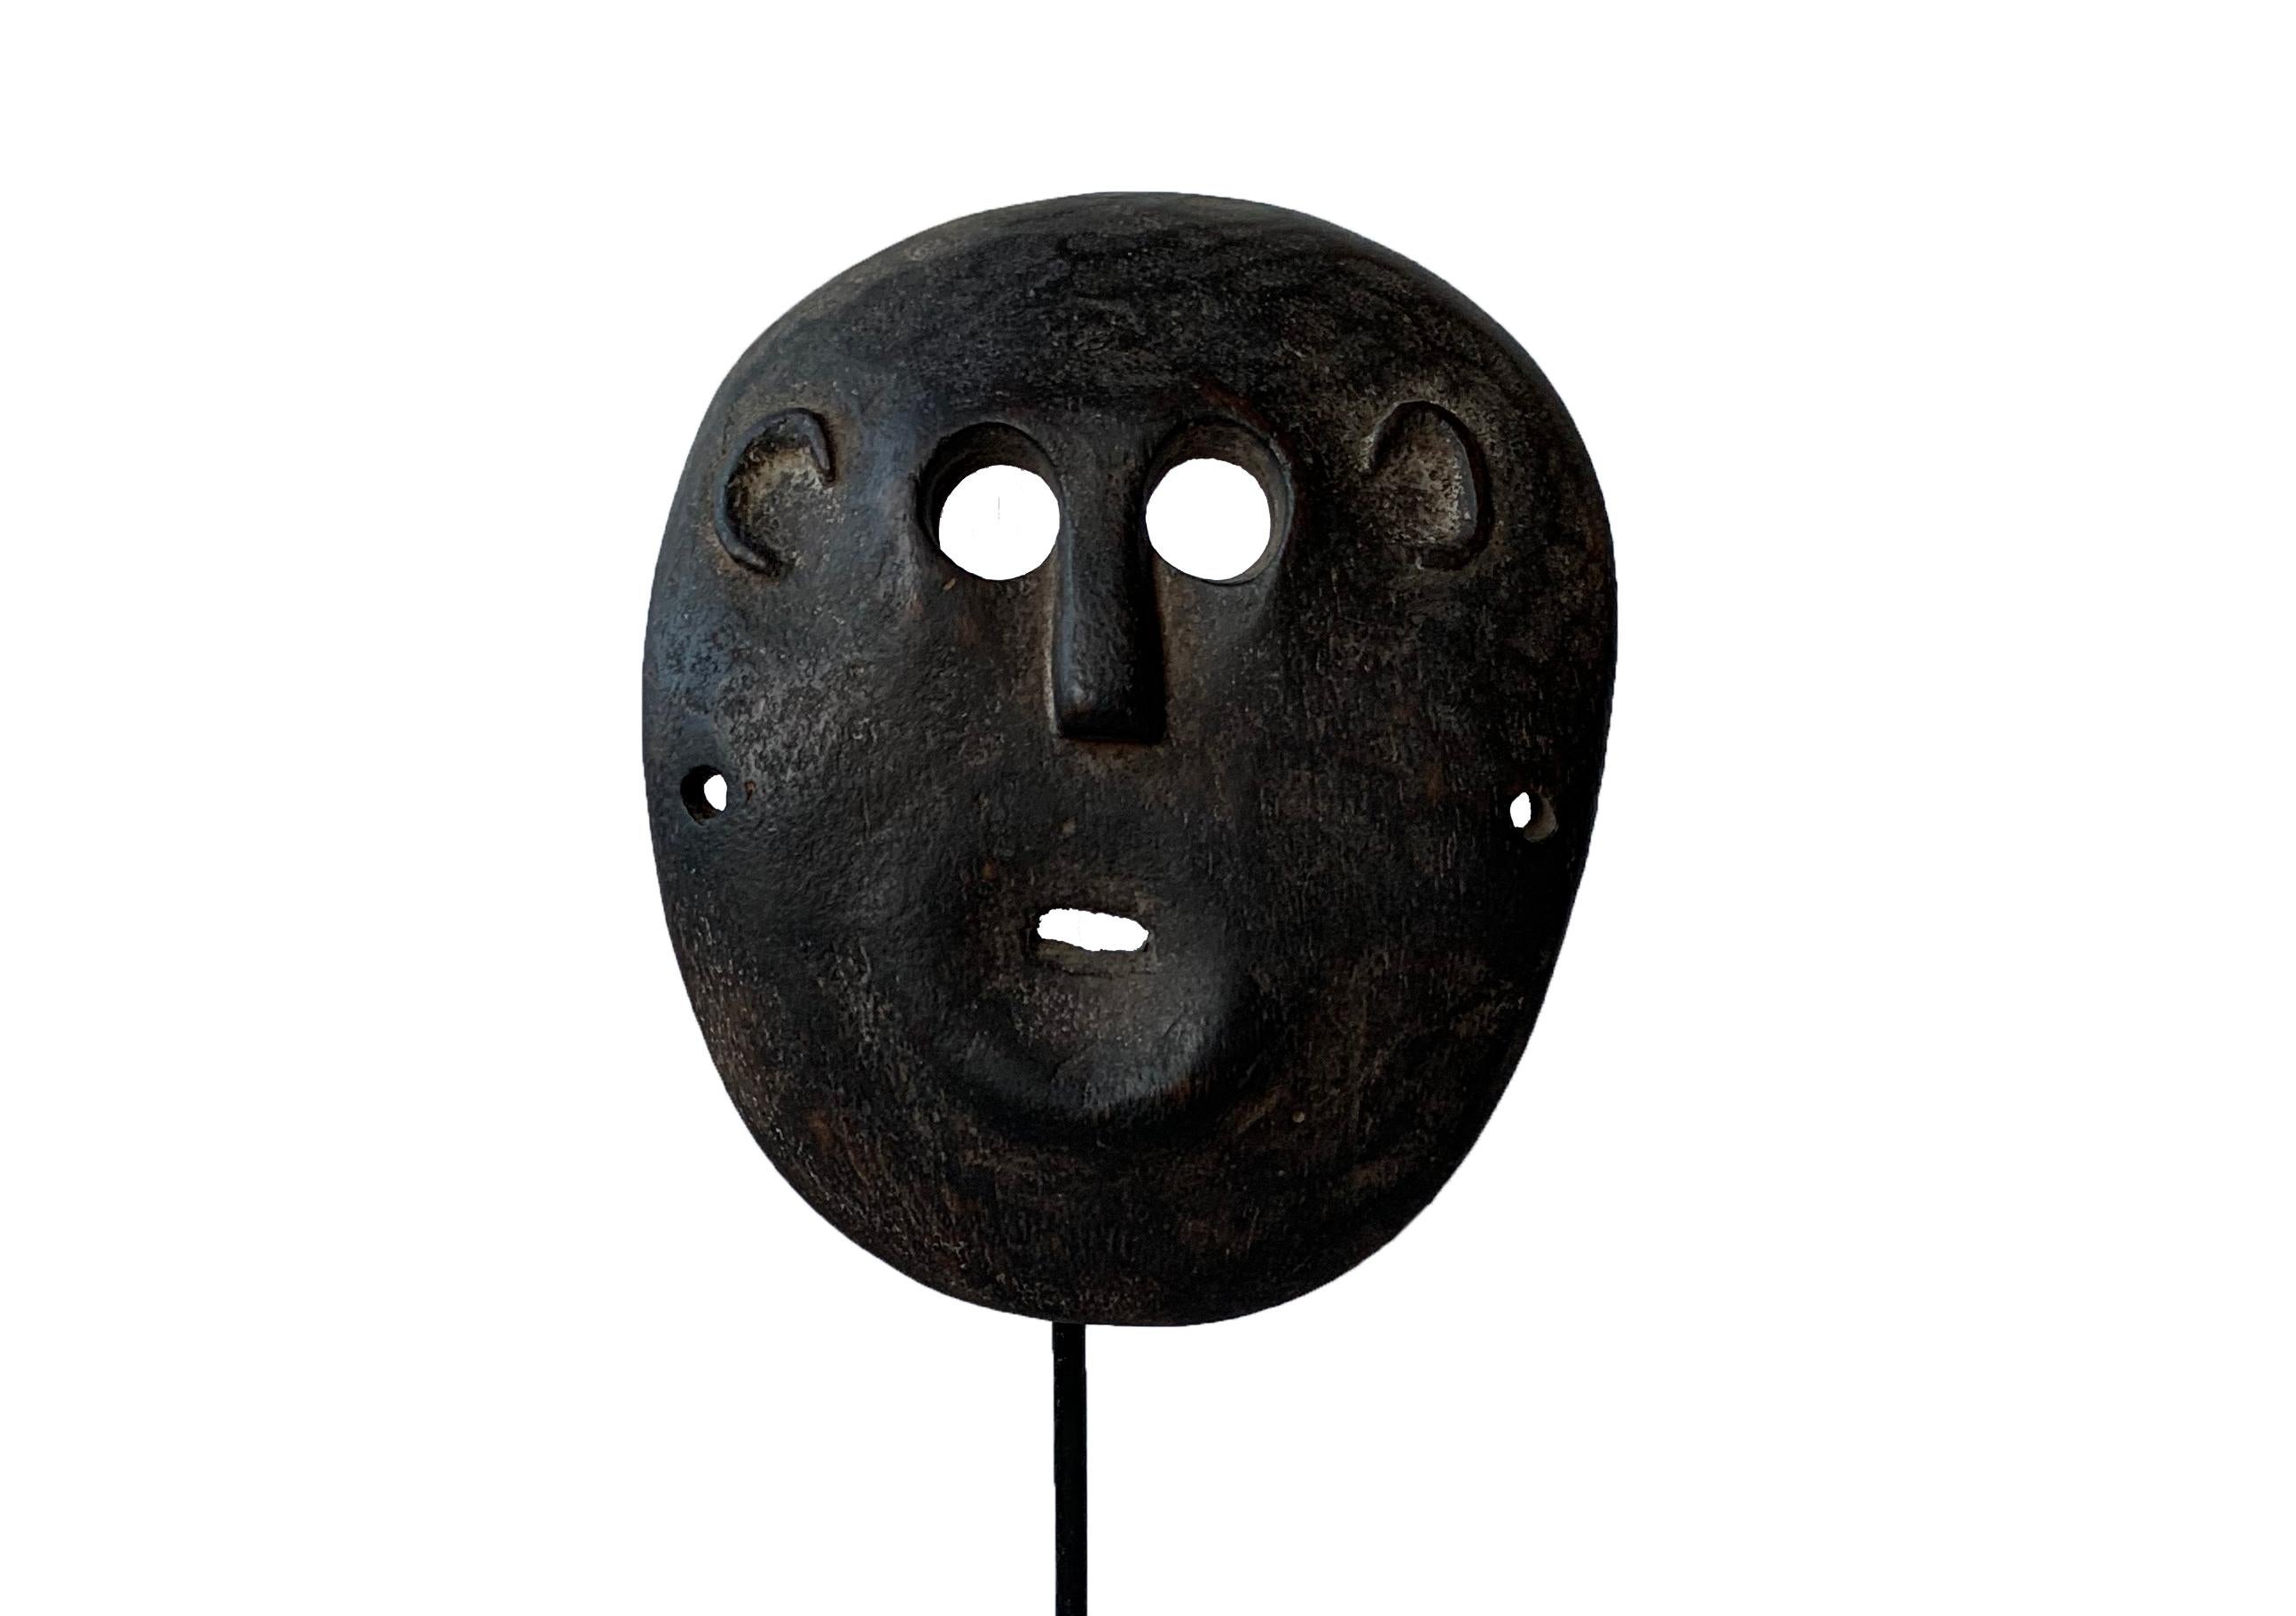 Diese sehr flache Maske stammt vom Volk der Atoni in Timor. Bei den Timoresen stellen Masken sowohl männliche als auch weibliche Ahnen dar, die von Kriegern zur Abschreckung von Feinden oder bei Zeremonien getragen werden. In Timor wurden die Masken